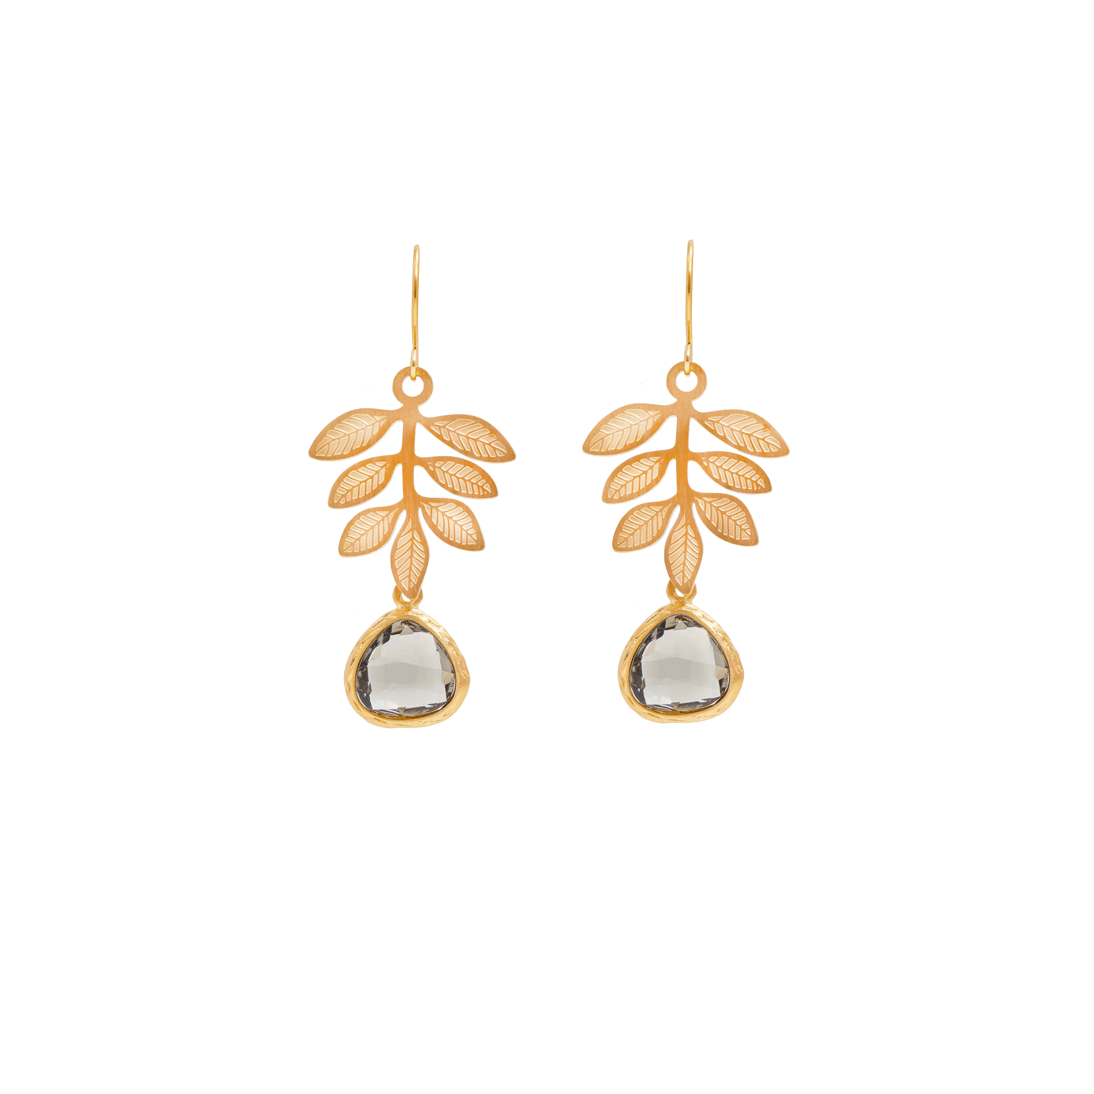 Paula floral earrings, Charcoal